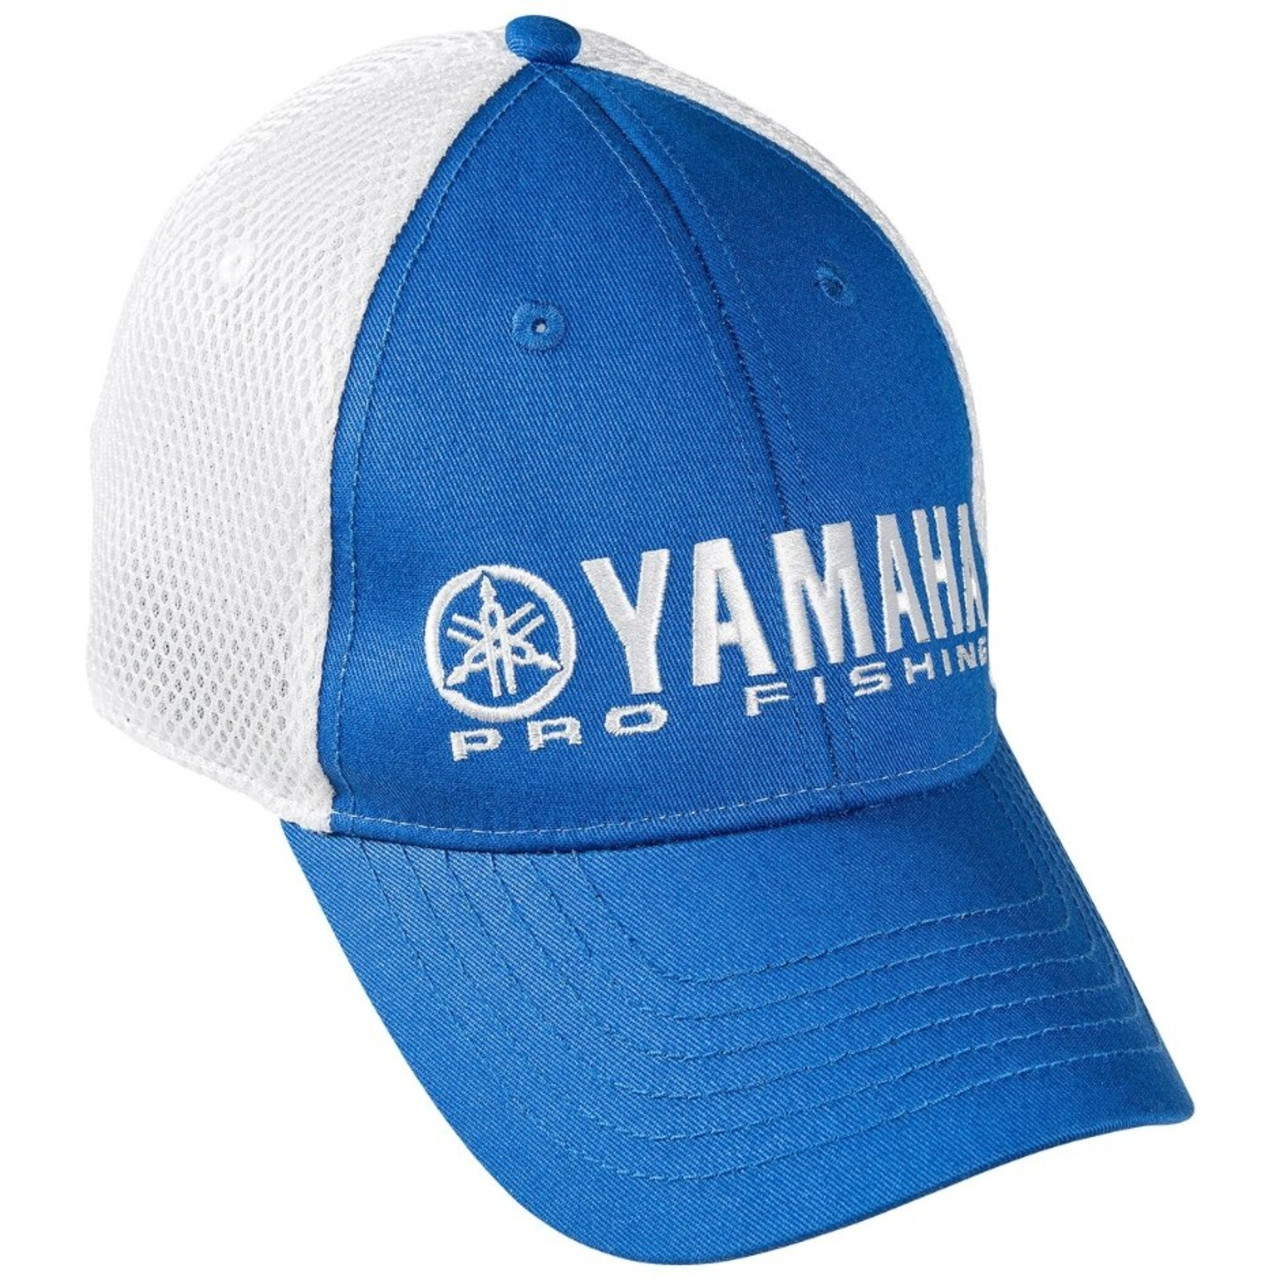 Yamaha New OEM Unisex Onesize Blue/White Pro Fishing Hat, CRP-14HPR-WH-NS